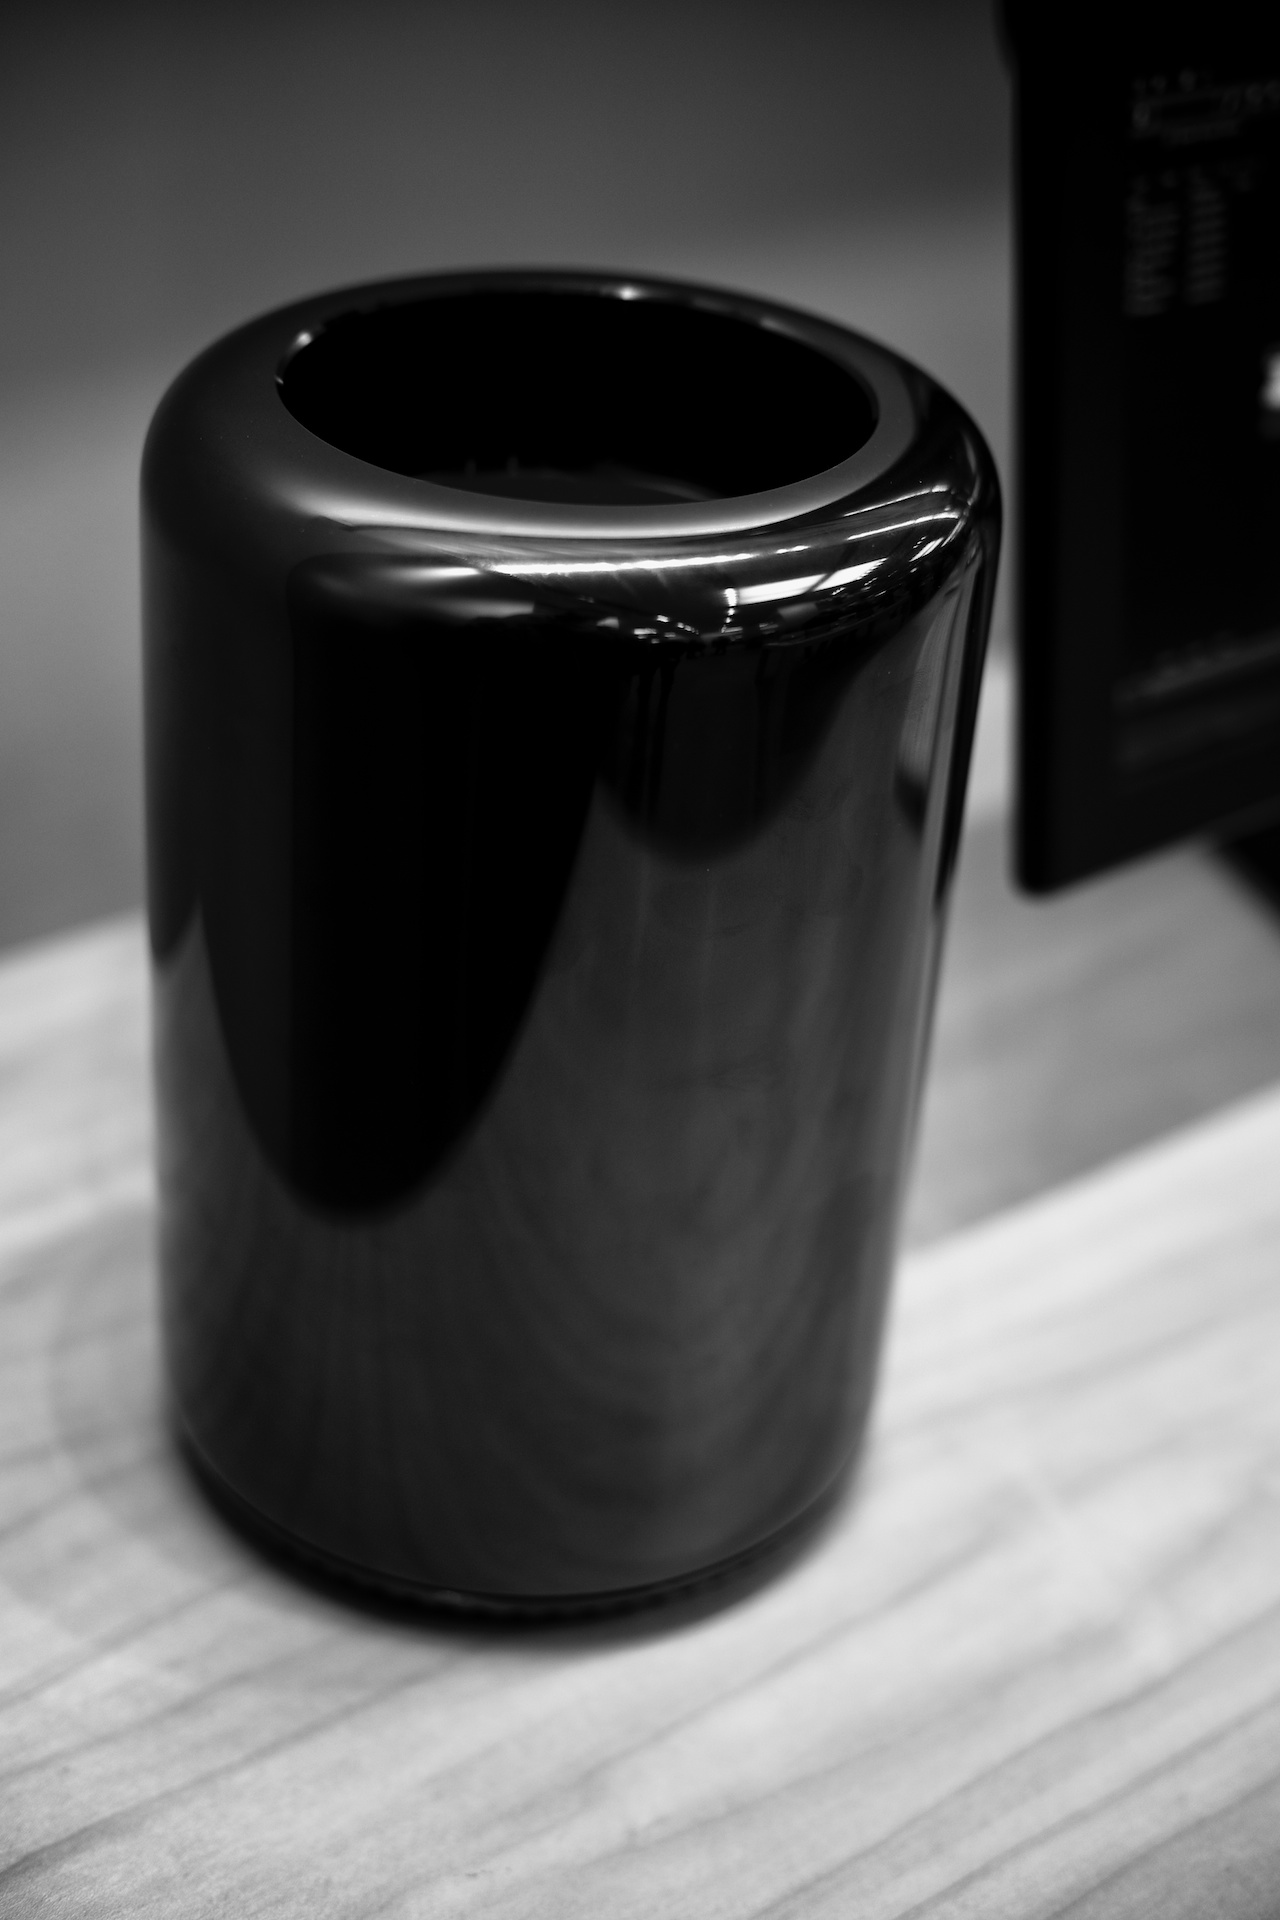 Mac Pro, predstavljen 2013. godine, odmaknuo je Appleova stolna računala od konvencionalnog dizajna u revolucionarno, umanjeno cilindrično kućište. Proširivost s dodatnim karticama je time onemogućena, no stvoren je iznimno snažan kompjuter u kompaktnom i tihom kućištu. Zbog svog dizajna dobio je nadimak "kante za smeće" ili "vaze".